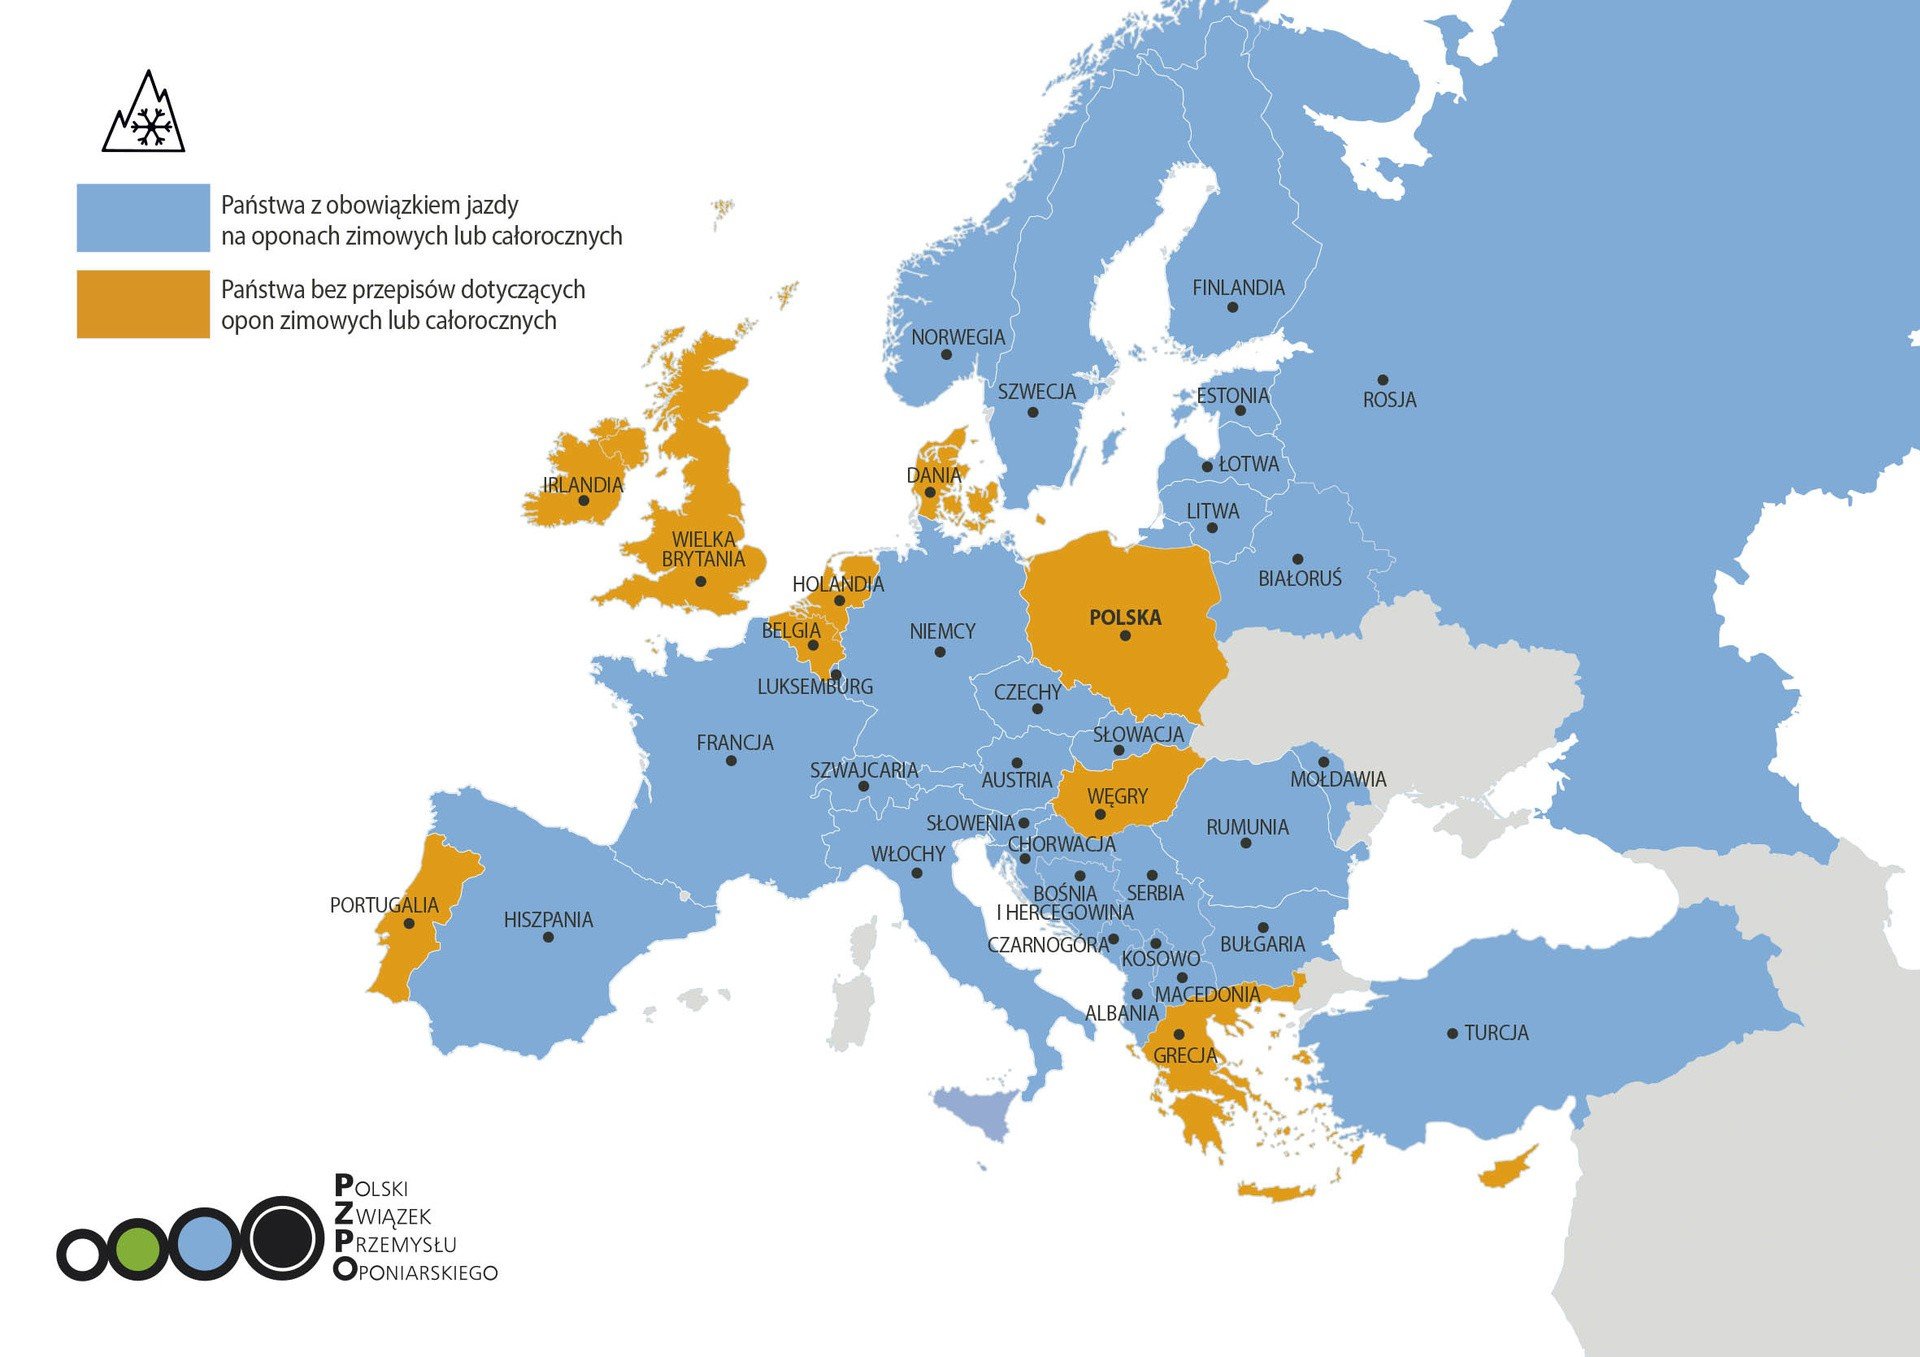 Opony zimowe. Gdzie w Europie są obowiązkowe i na jakich zasadach? |  Motofakty